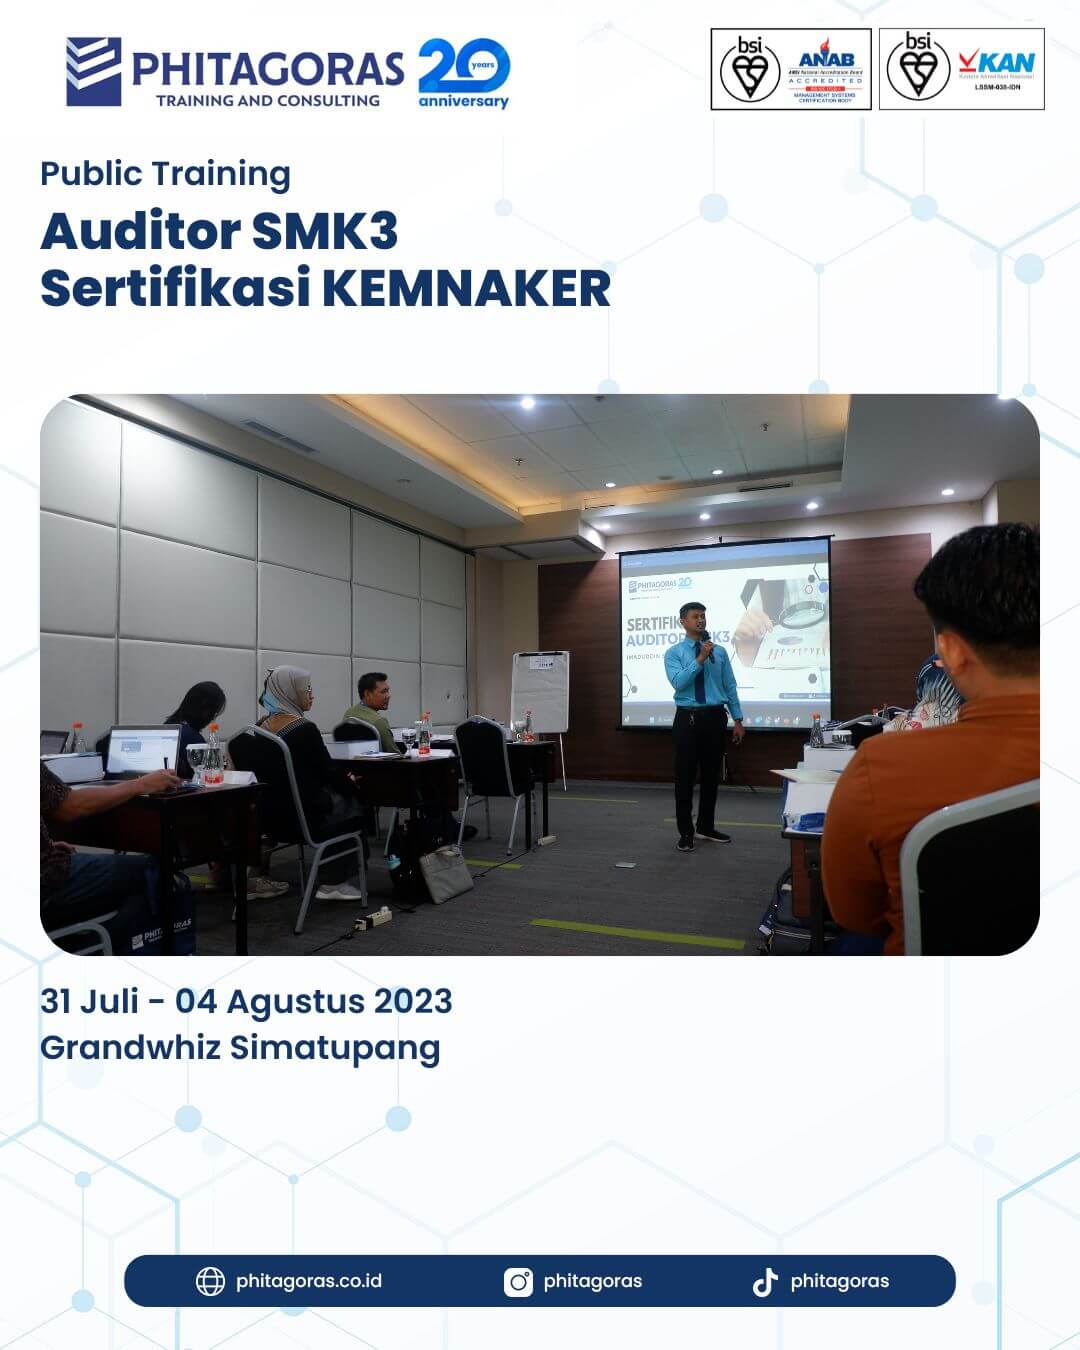 Public Training Auditor SMK3 Sertifikasi KEMNAKER